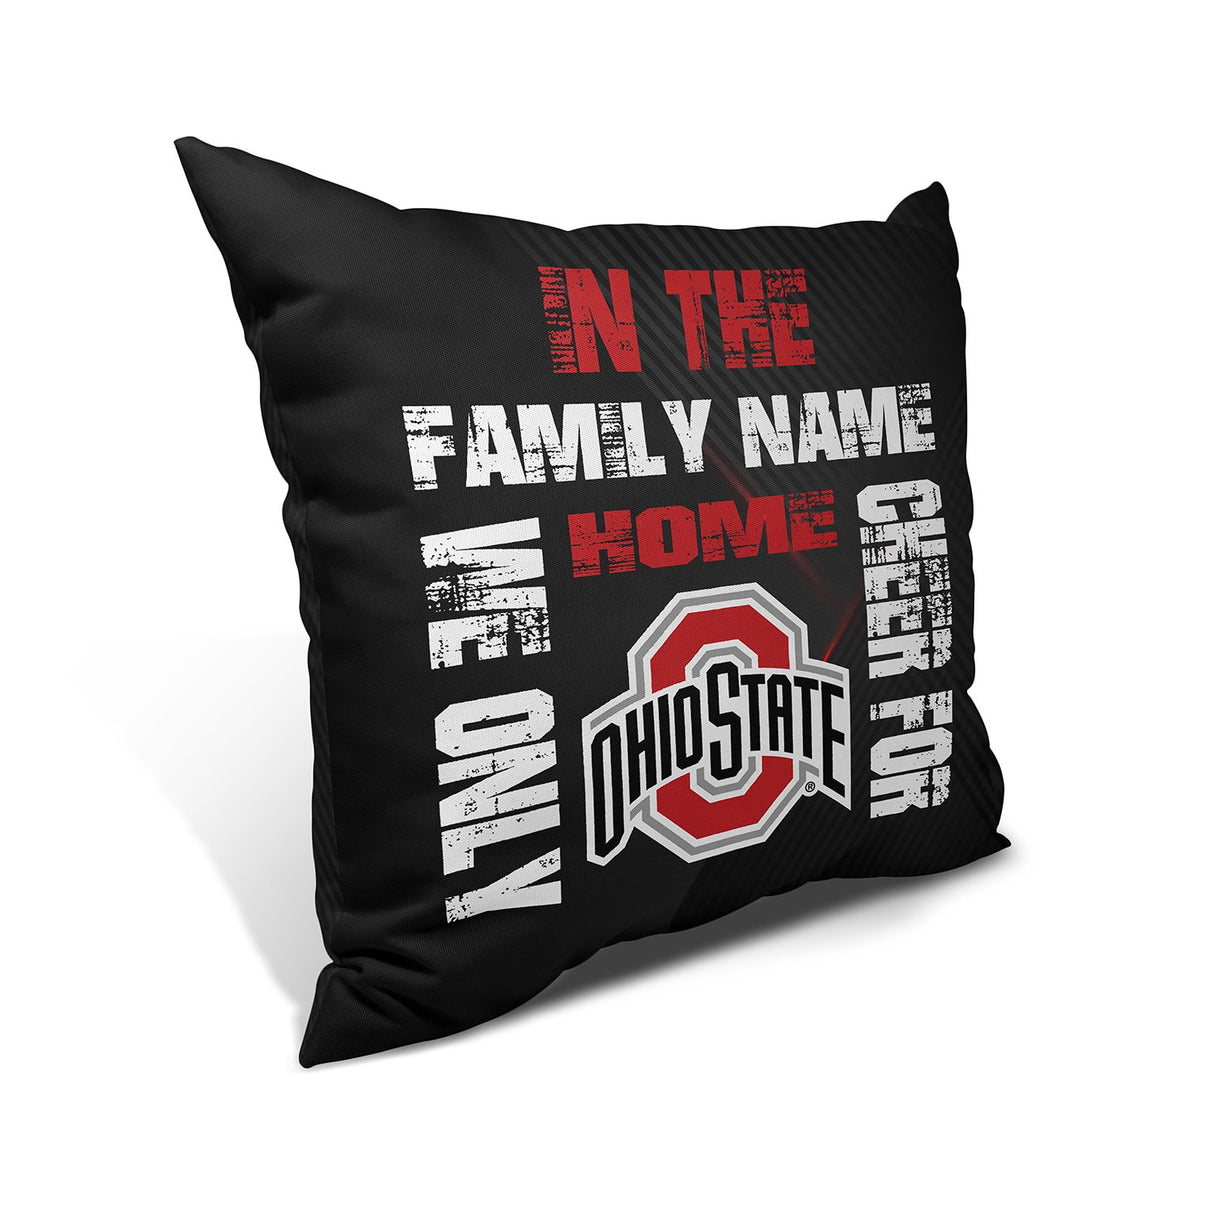 Pixsona Ohio State Buckeyes Cheer For Throw Pillow | Personalized | Custom